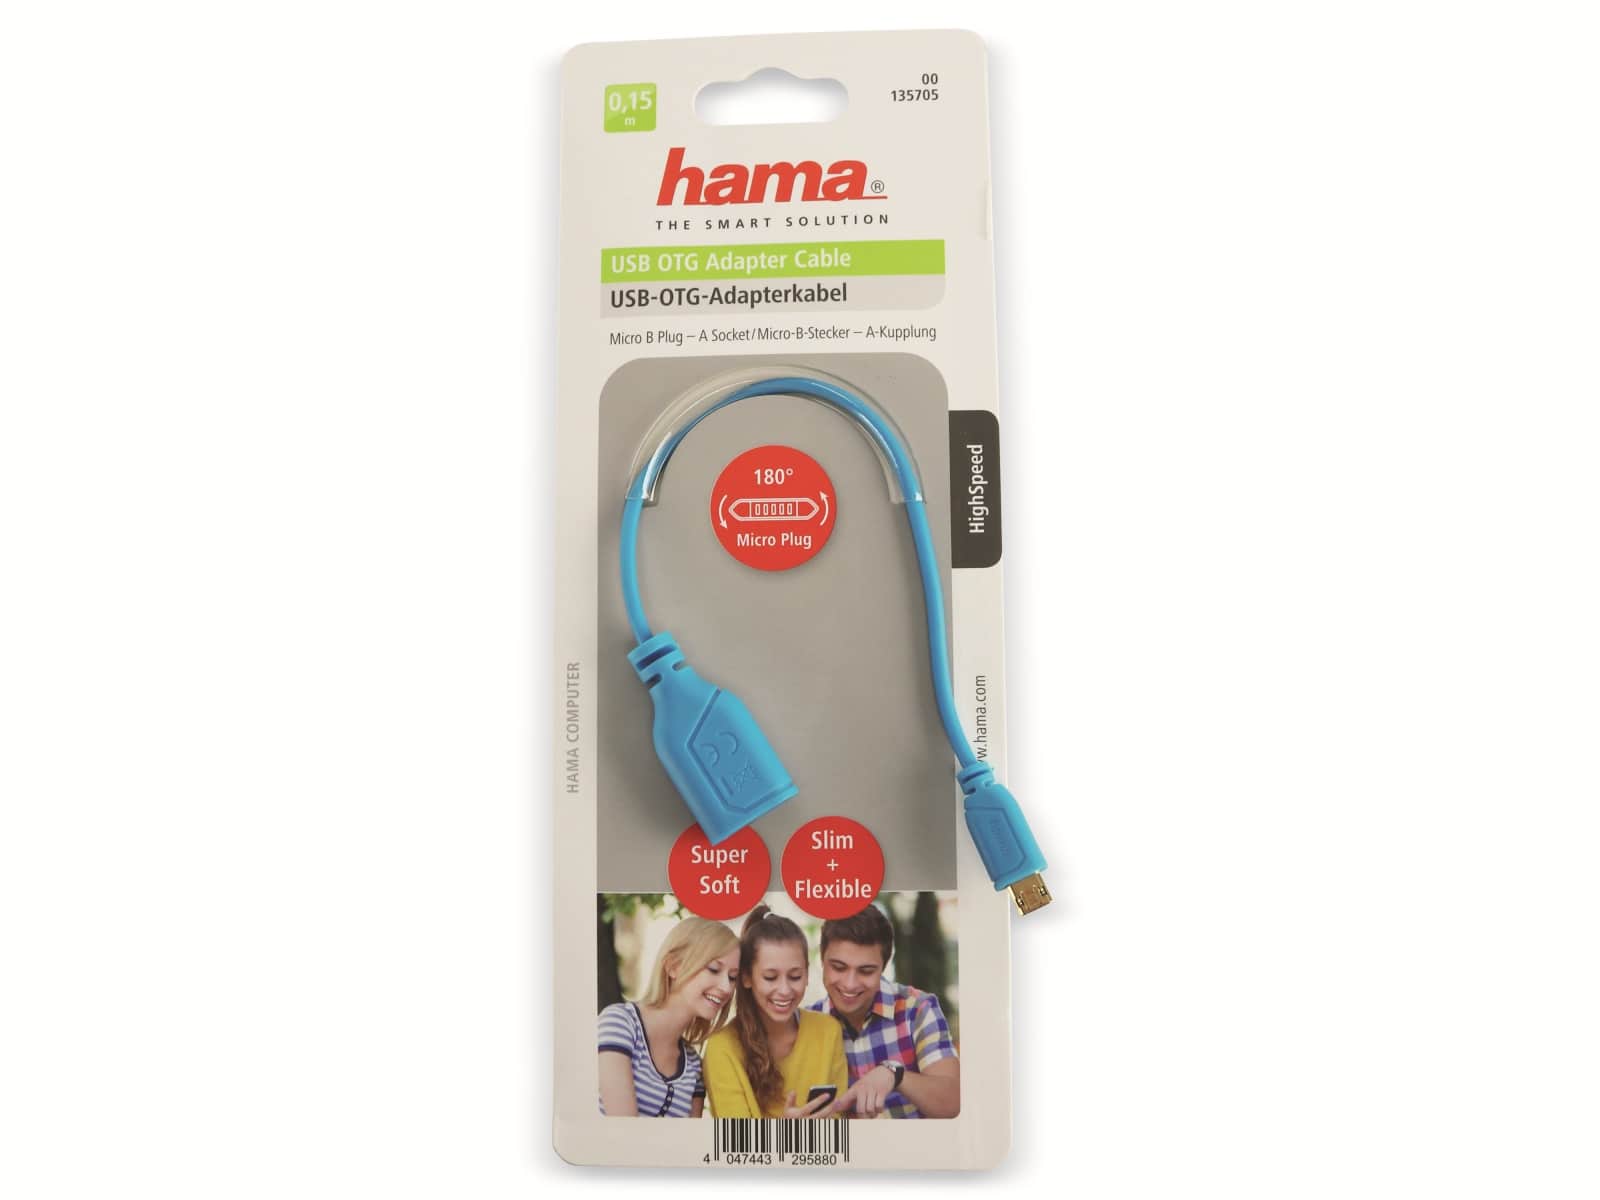 HAMA Micro-USB OTG Kabel 135705, Flexi-Slim, blau, 0,15 m